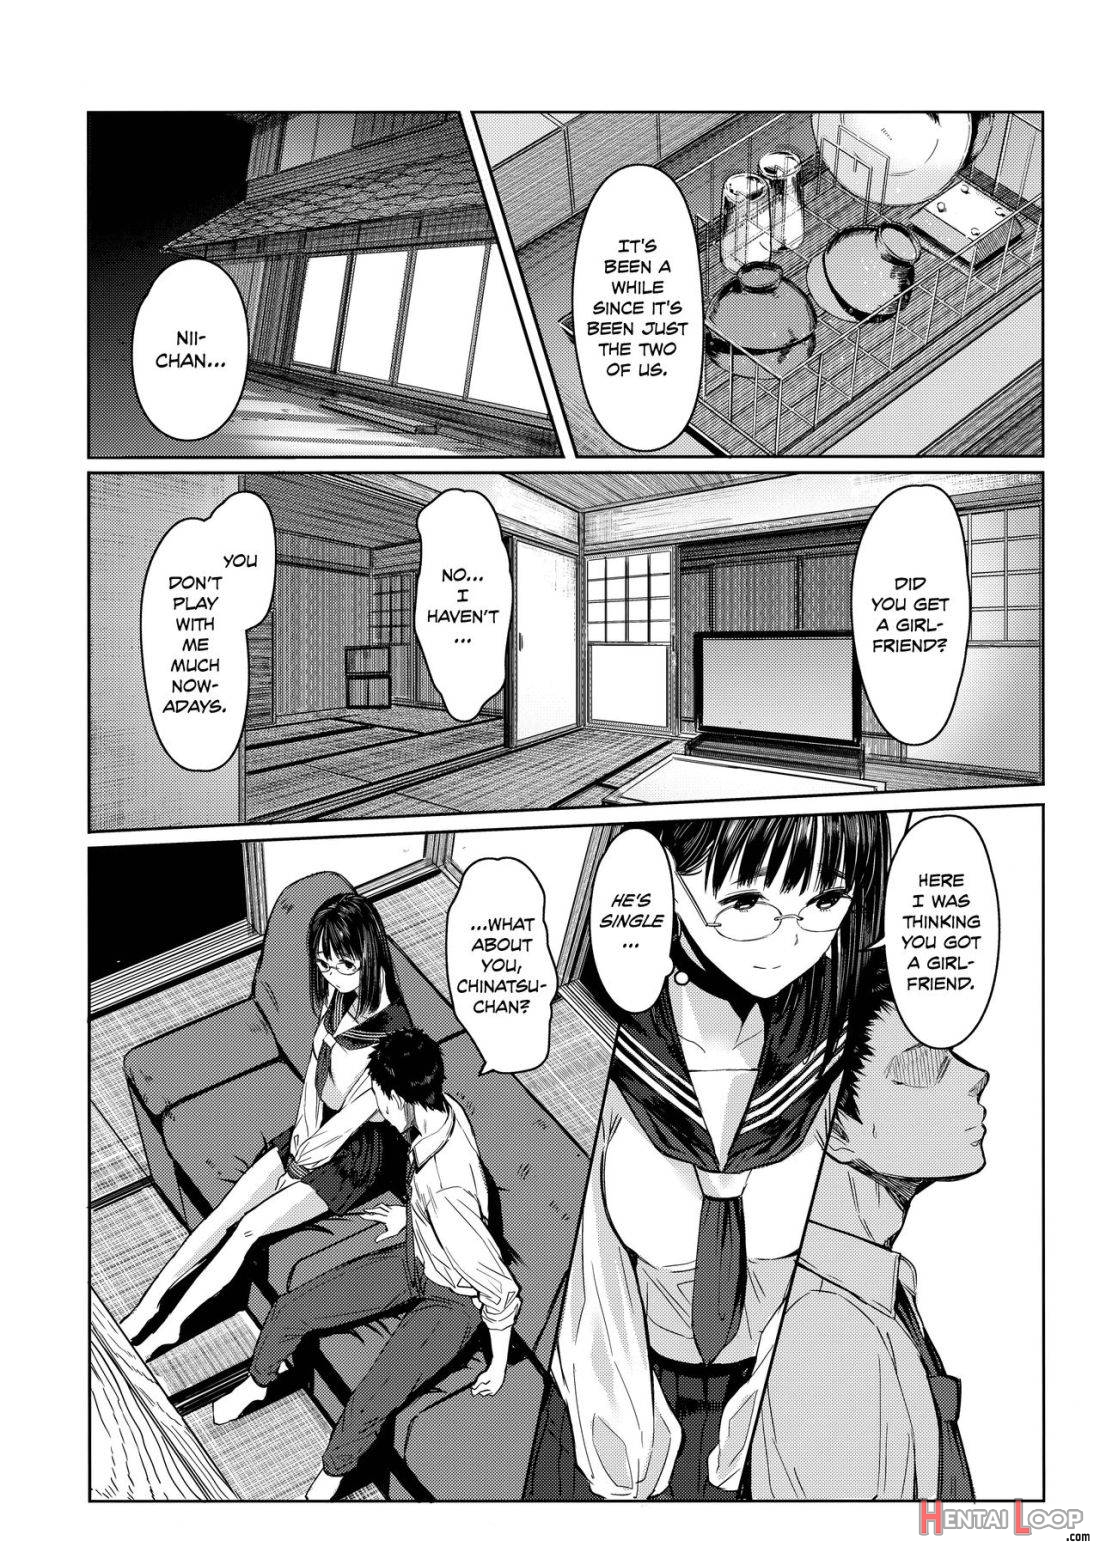 Tonari no Chinatsu-chan R page 11